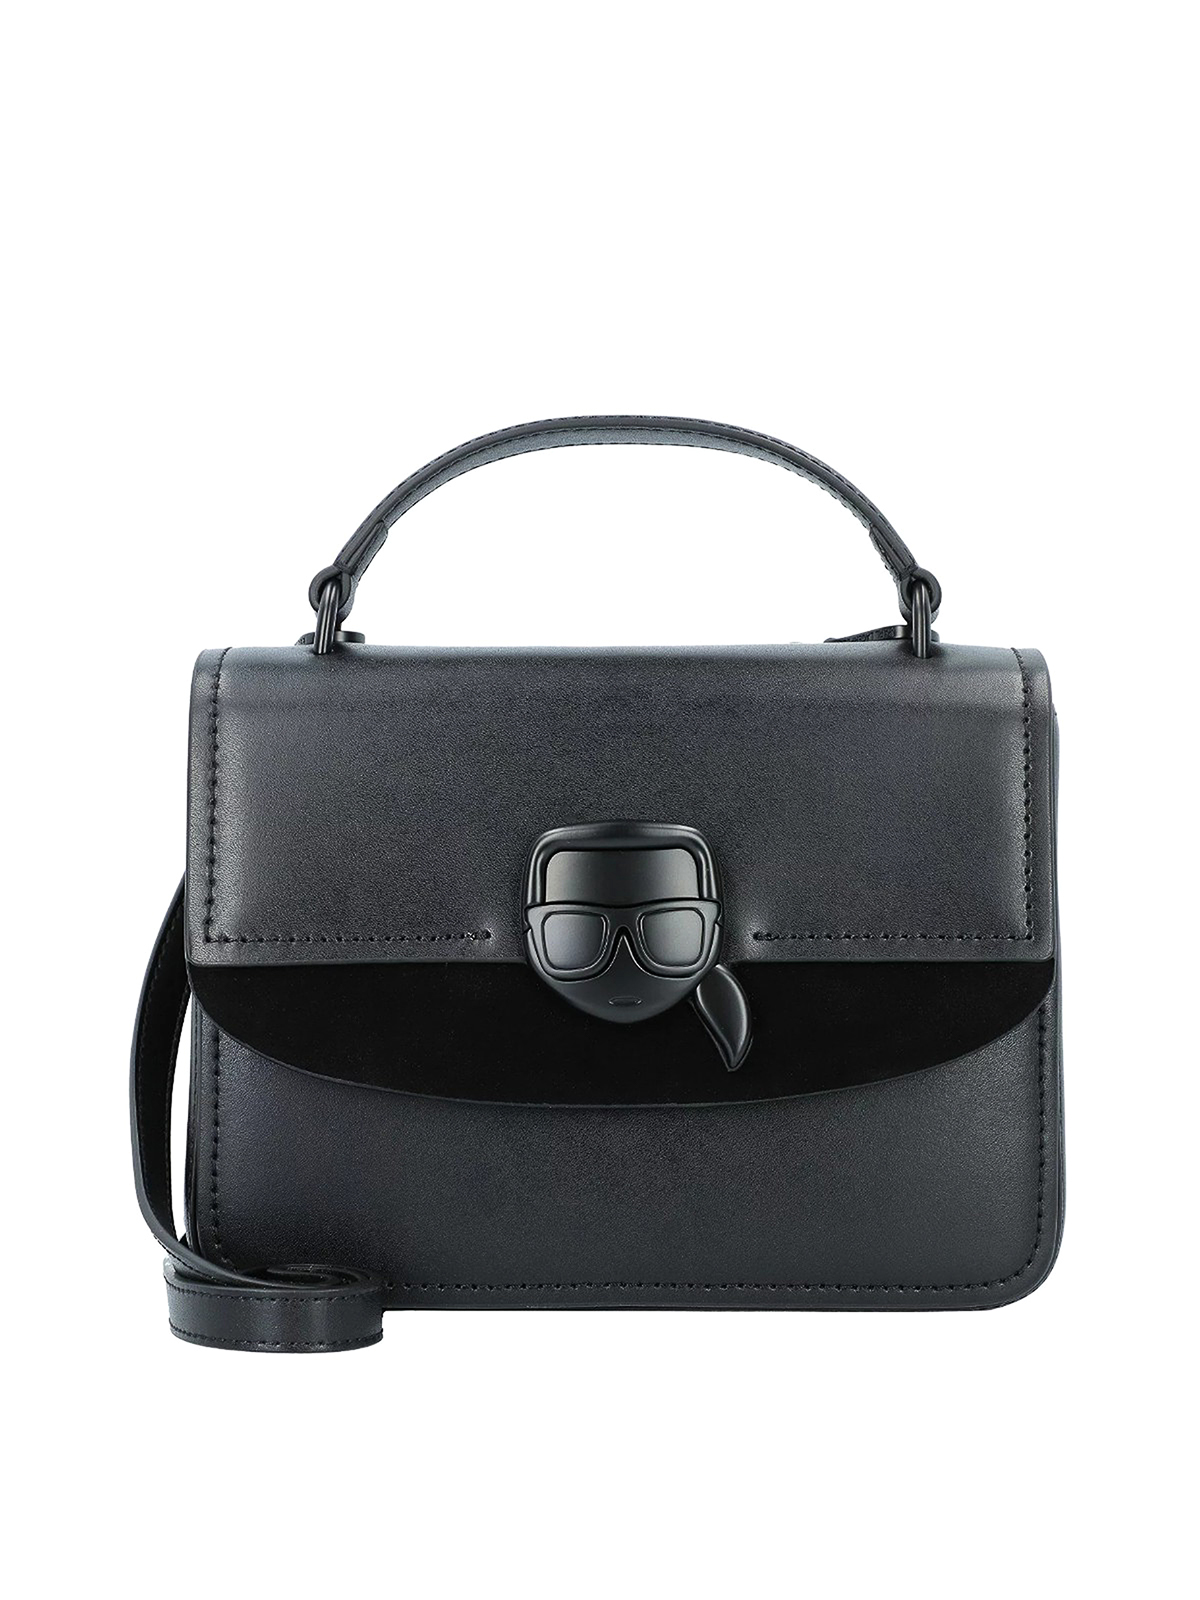 Karl Lagerfeld Karlito Bag In Black